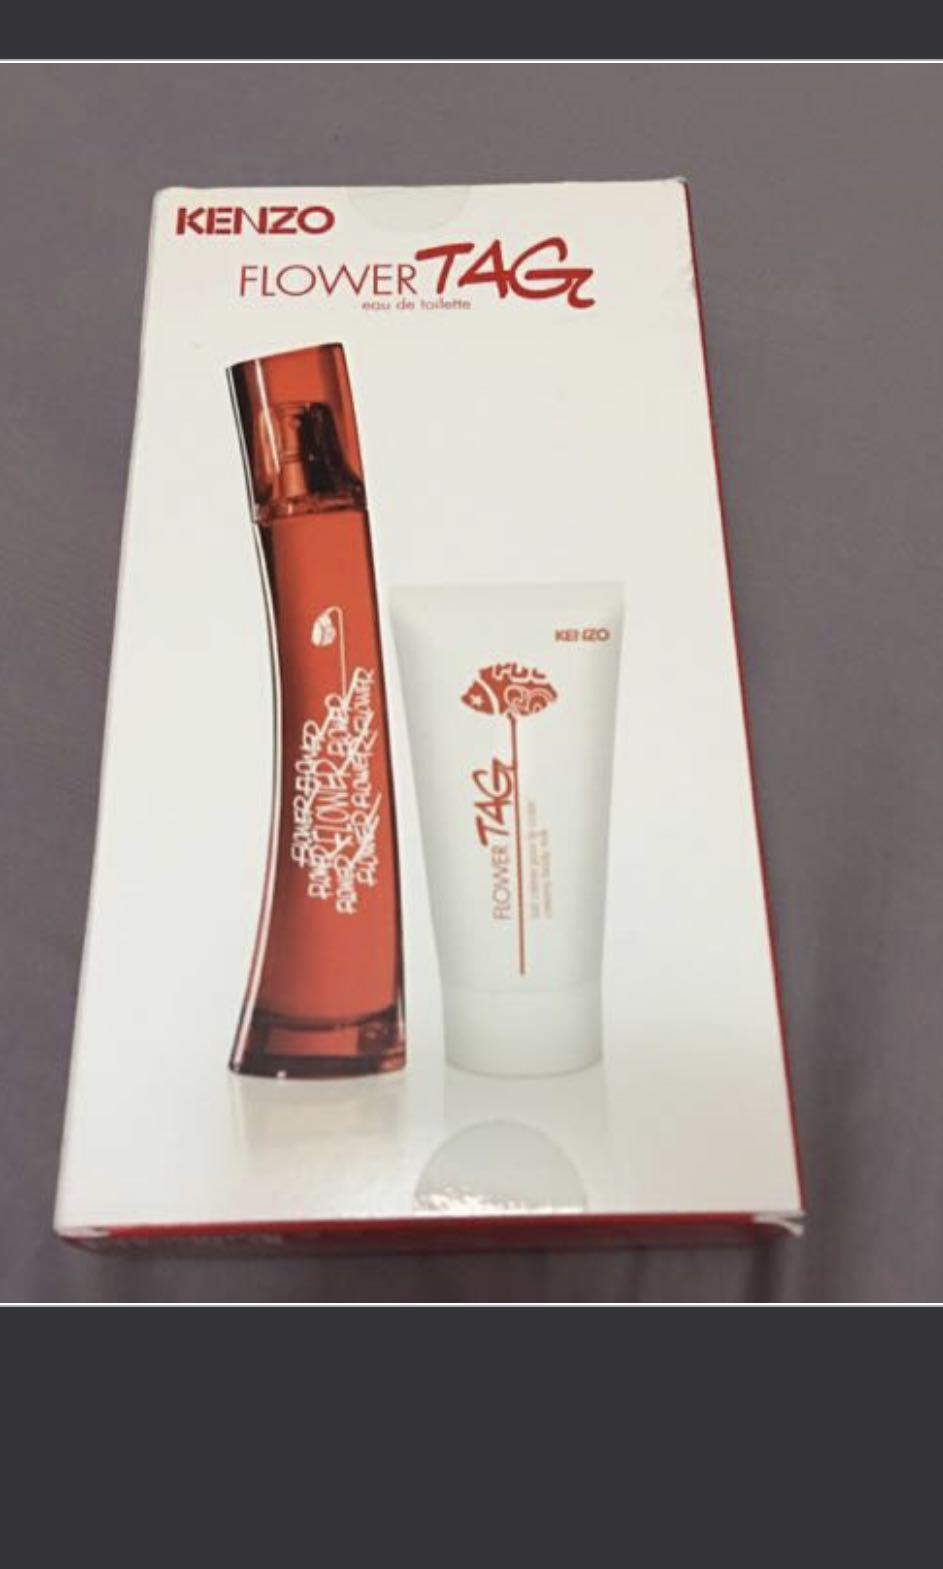 kenzo flower tag perfume